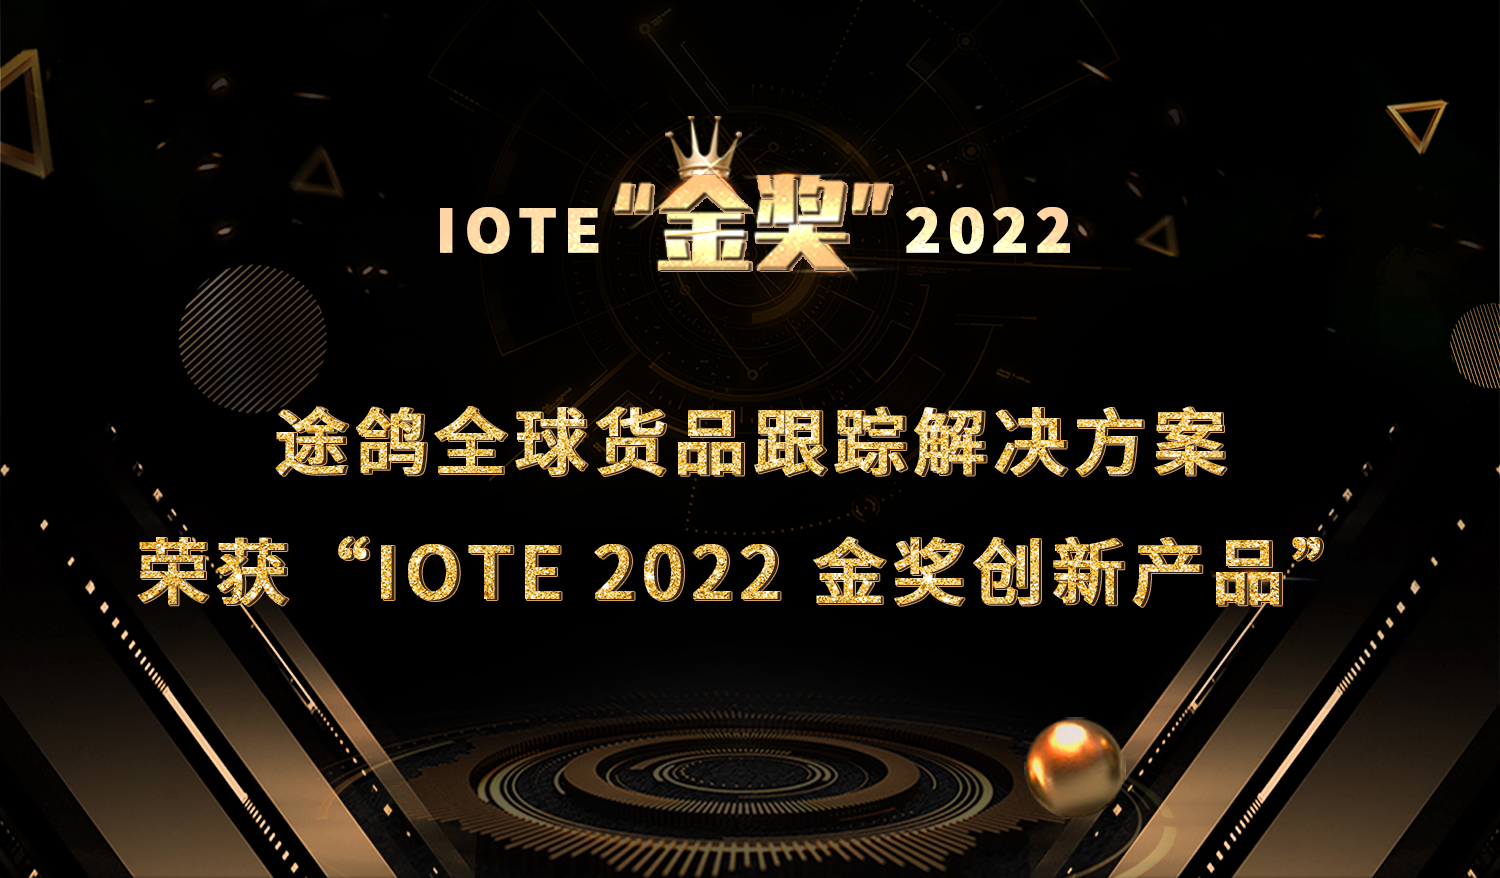 途鸽全球货品跟踪解决方案荣获“IOTE 2022 金奖创新产品”